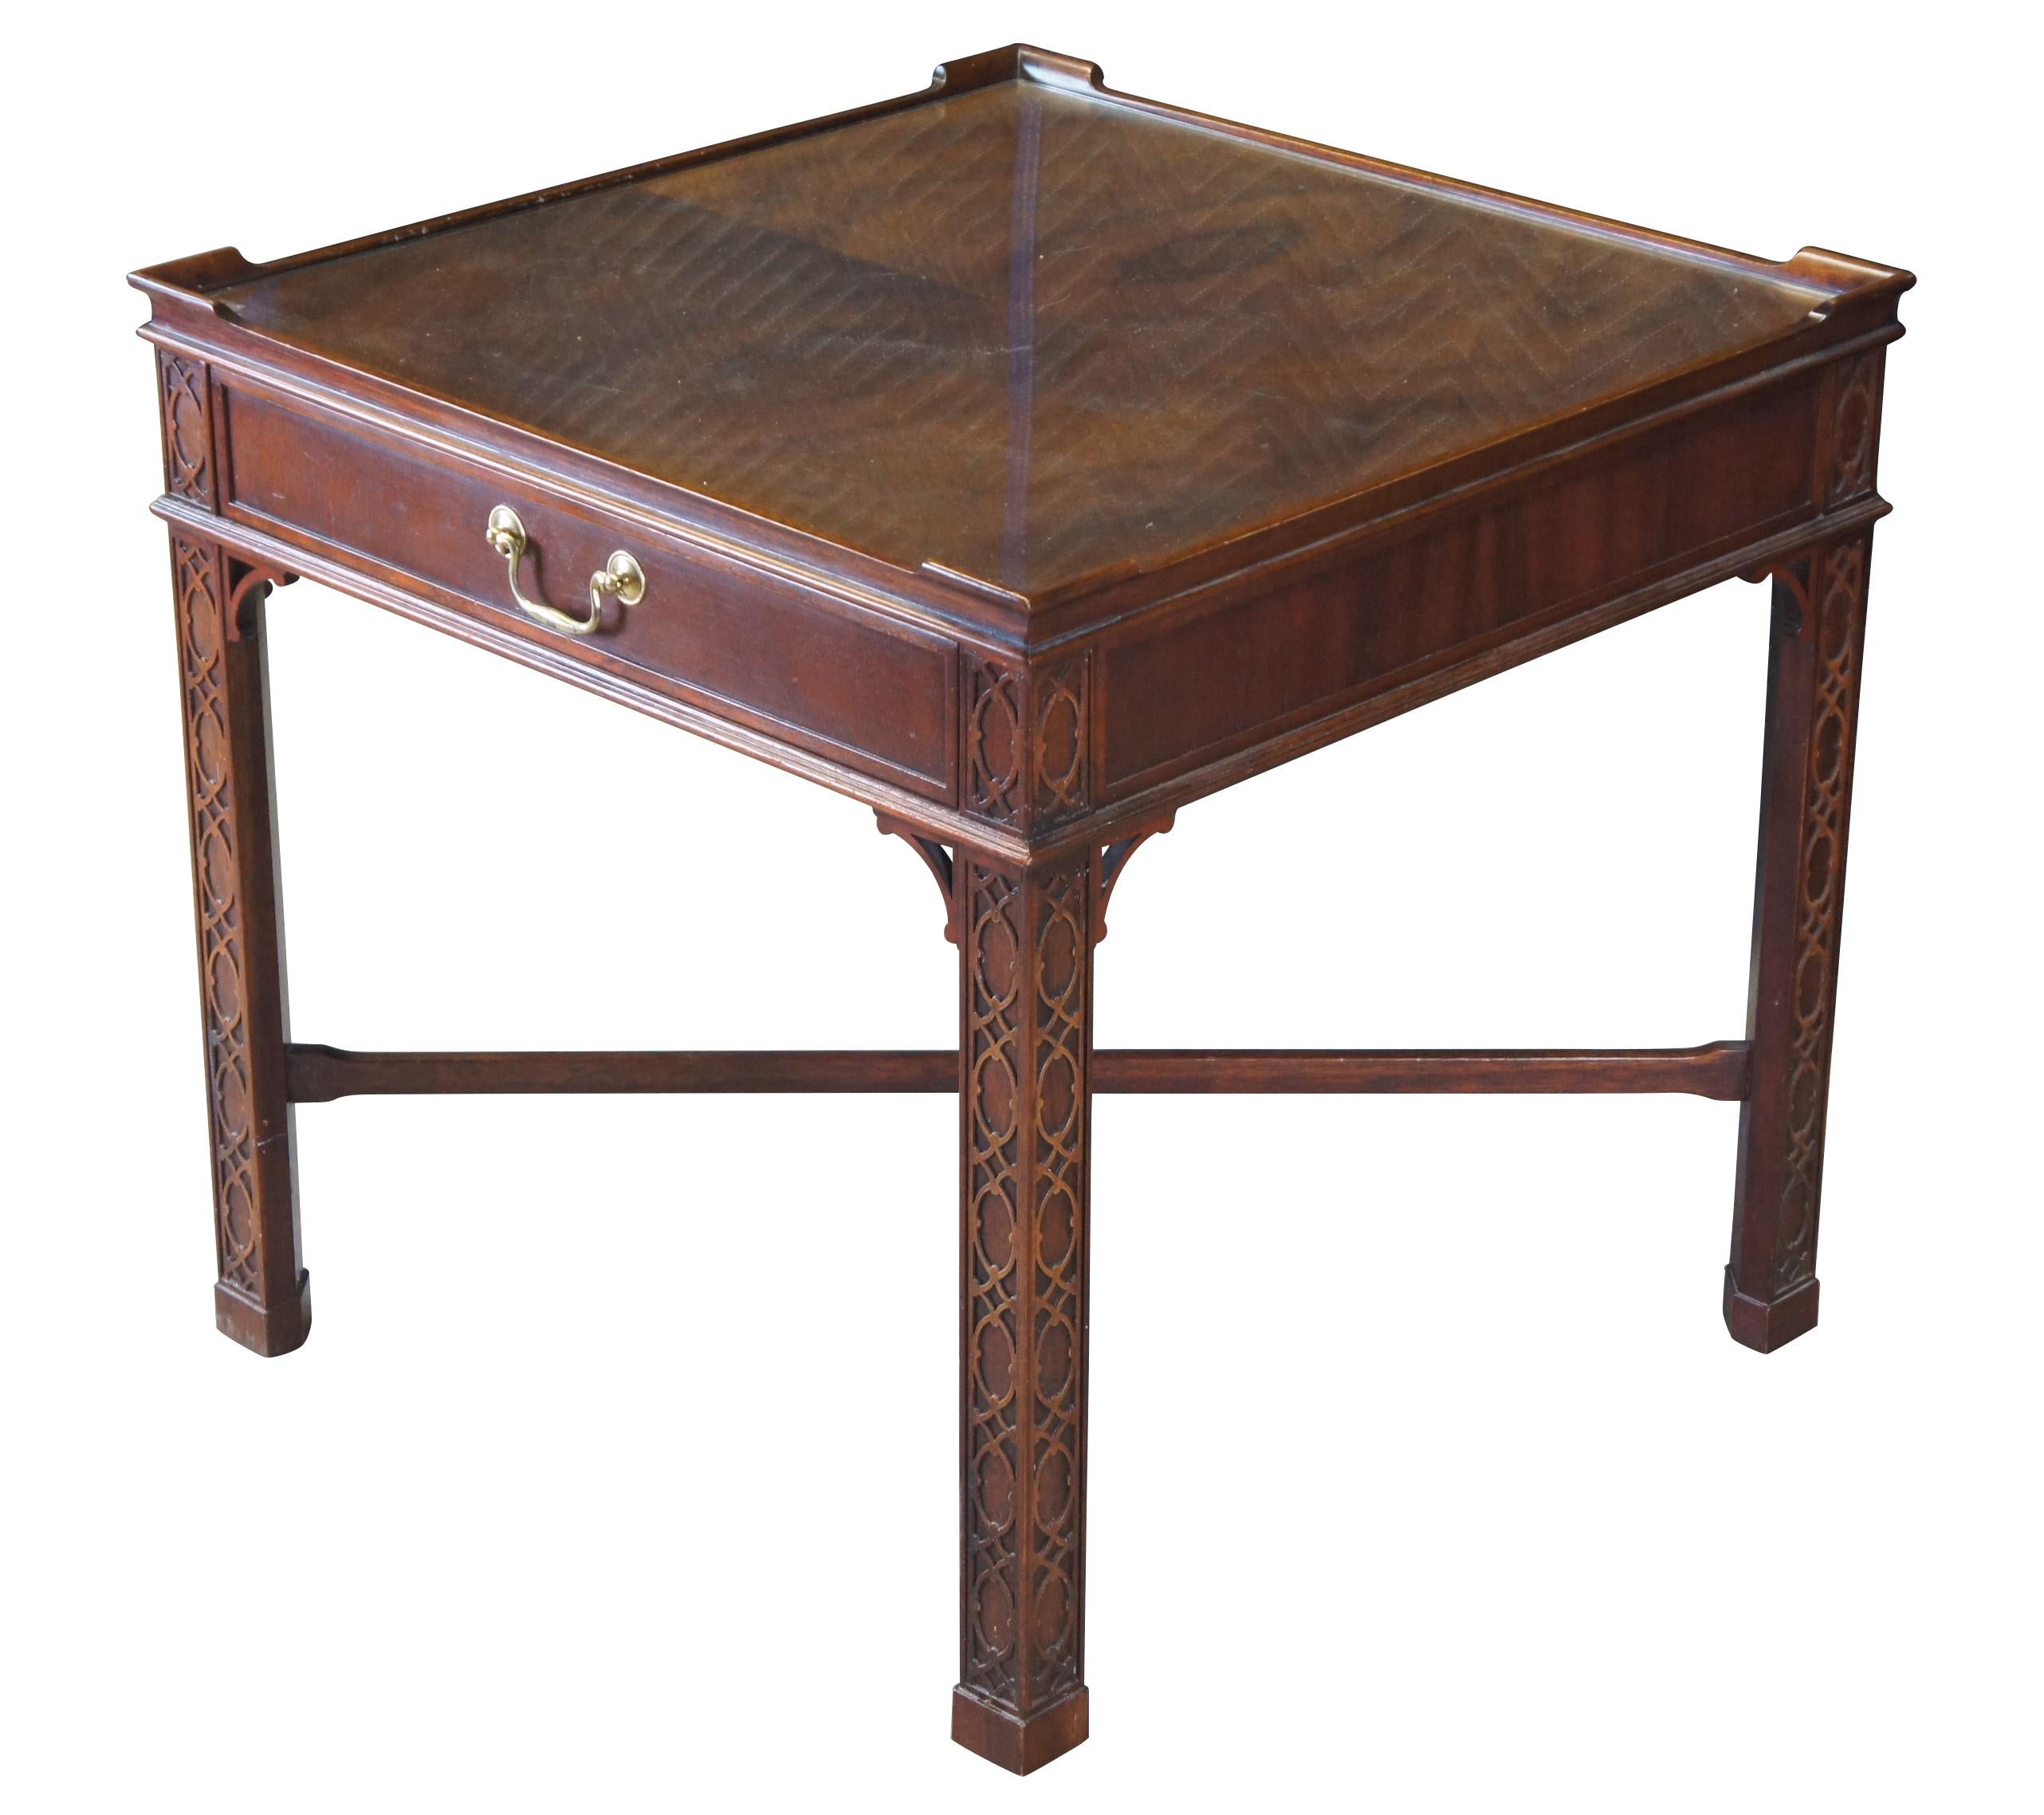 Ein königlicher Beistelltisch von Baker Furniture, CIRCA letztes Viertel 20. Jahrhundert.  Inspiriert vom englischen georgianischen und chinesischen Chippendale-Stil.  Der Rahmen ist aus Mahagoniholz gefertigt und mit einer streichholzfurnierten